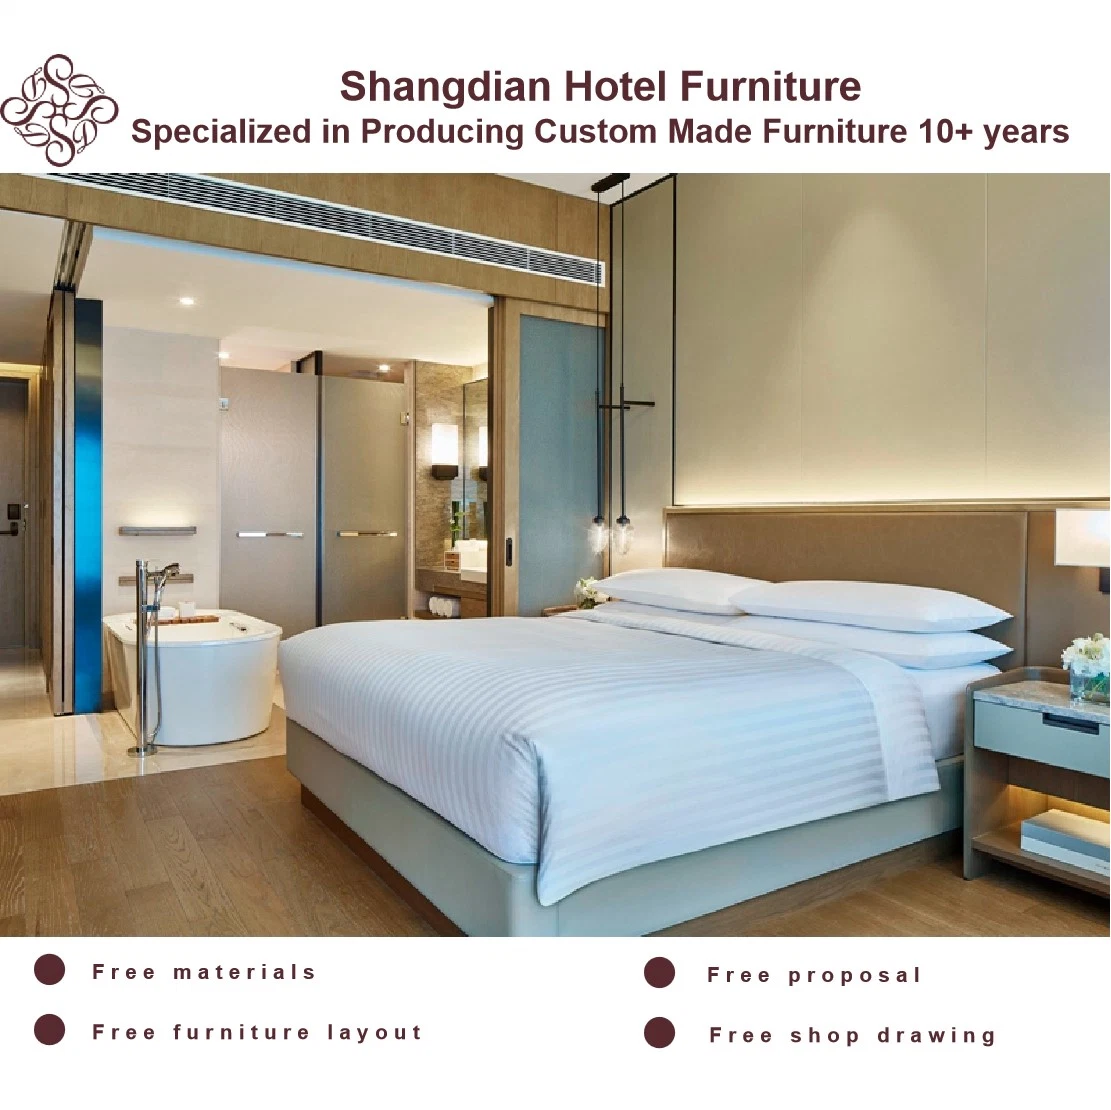 Conjunto comercial chinesa Apartment Villa Mobiliário de quarto de hotel com uma moderna sala de estar 5 Star